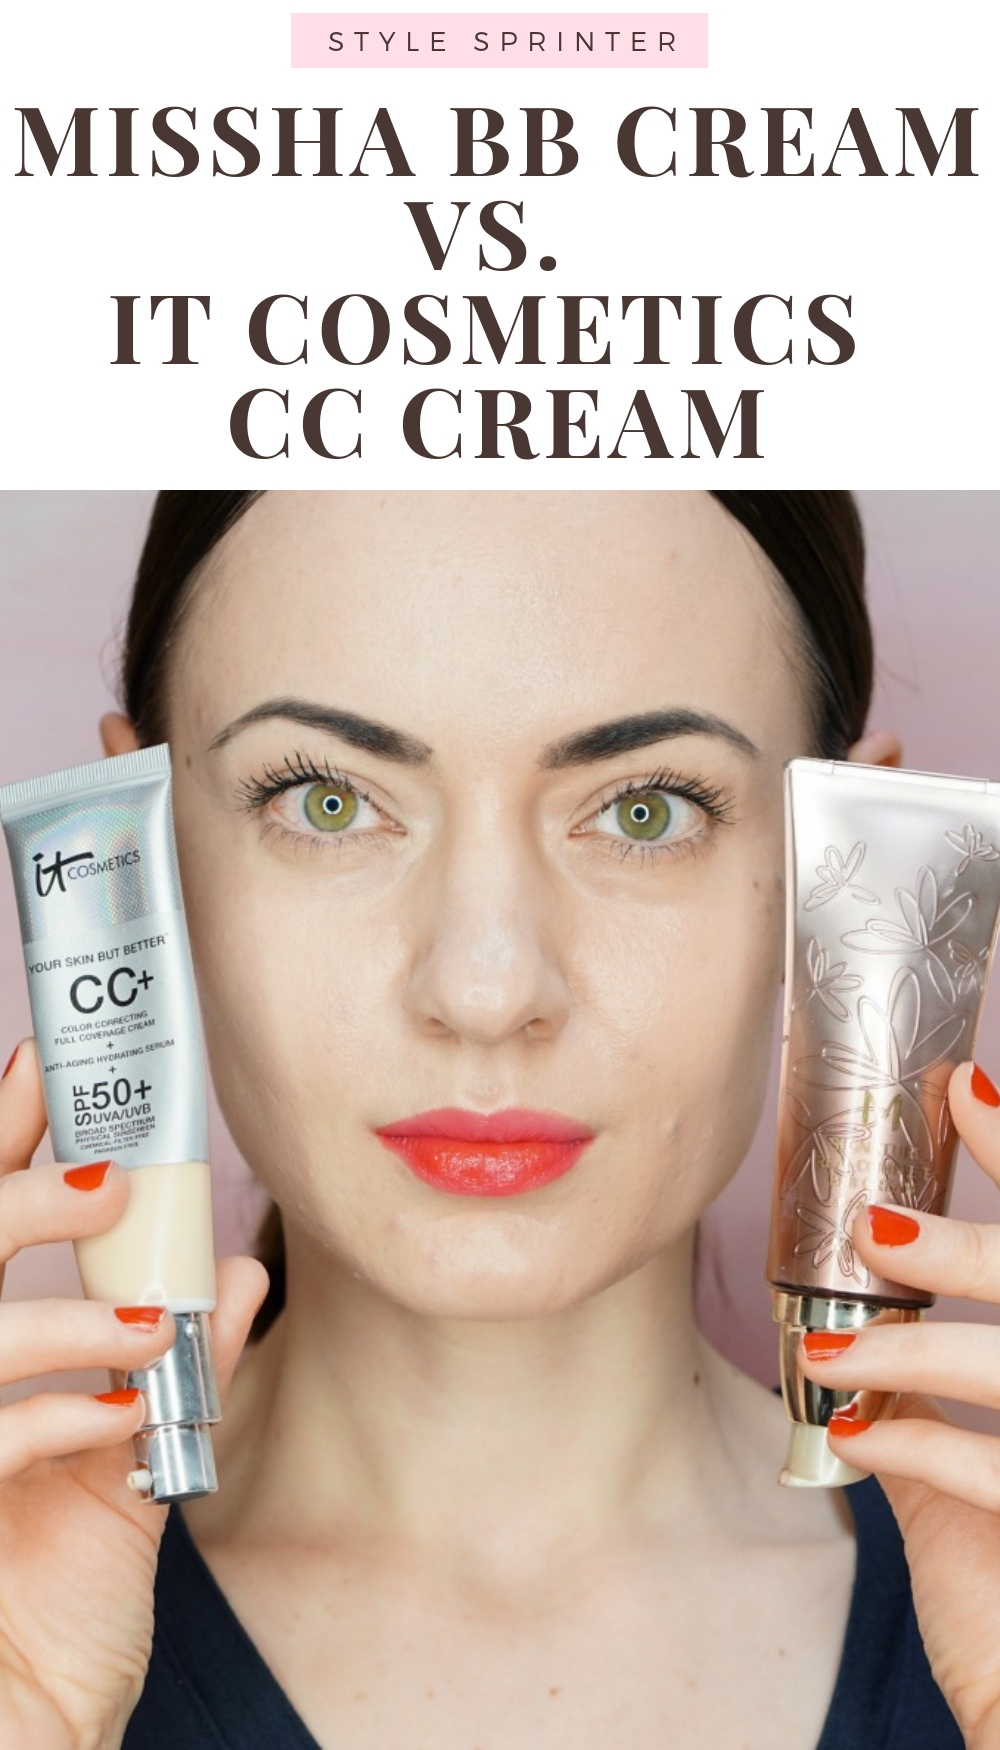 Missha BB Cream vs. It Cosmetics CC Cream - Comparison and Review